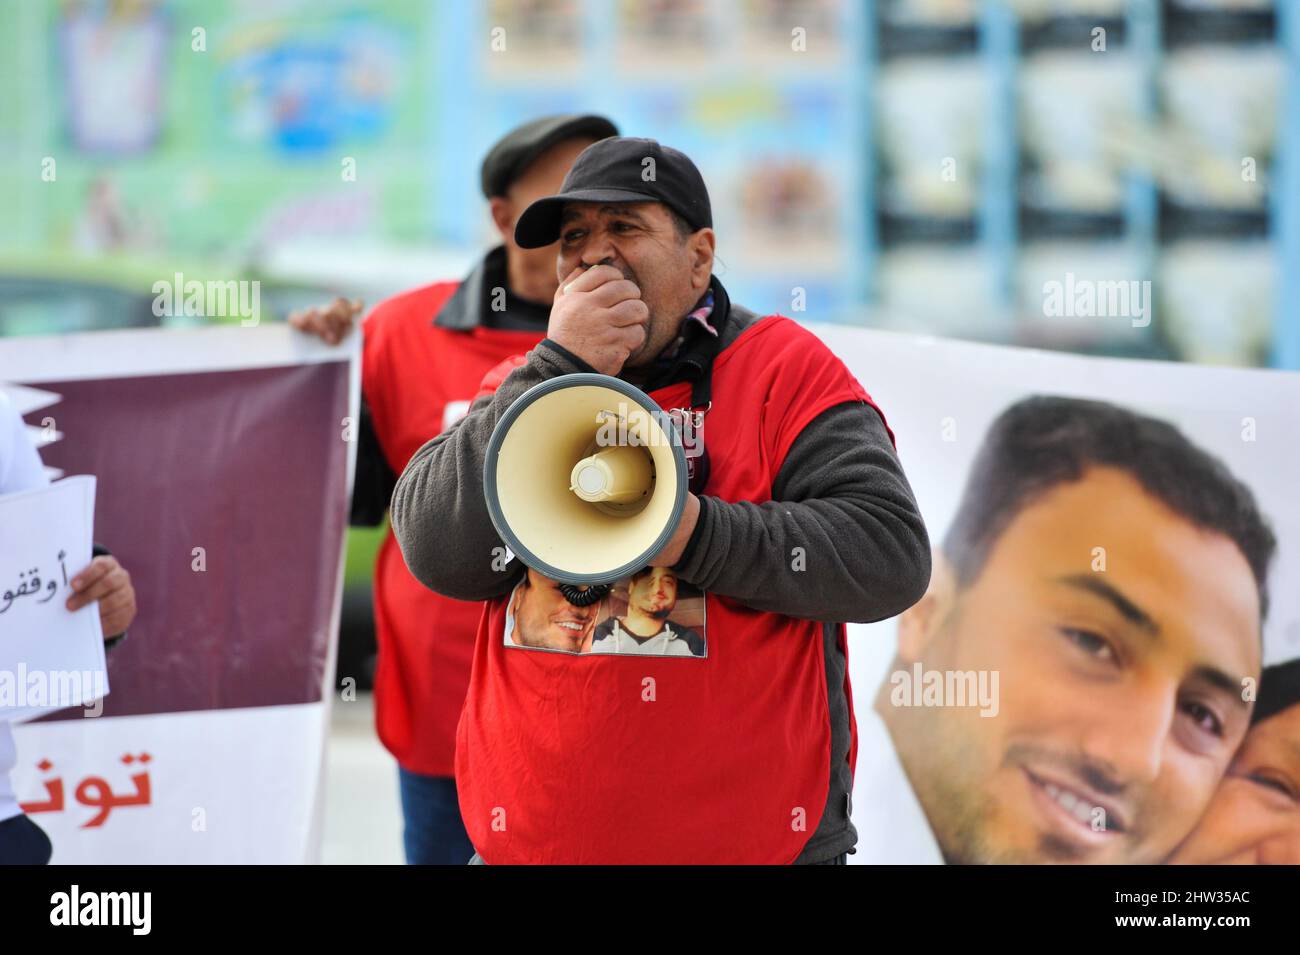 Tunis, Tunesien. 3. März 2022. Tunis, Tunesien. 3. März 2022. Vor der Botschaft von Katar in Tunis fordern die Tunesier Fakhri Landolsi in einer Mahnwache die Freilassung aus dem Gefängnis. Fakhri Landolsi wurde in Katar festgenommen, seit er der Beteiligung an der Tötung eines somalischen Soldaten der katarischen Streitkräfte beschuldigt wurde. Landolsi, der ursprünglich mit einem Todesurteil konfrontiert war, wartet nun in einem bevorstehenden Prozess auf eine verkürzte Strafe (Bildquelle: © Hasan mrad/IMAGESLIVE via ZUMA Press Wire) Stockfoto